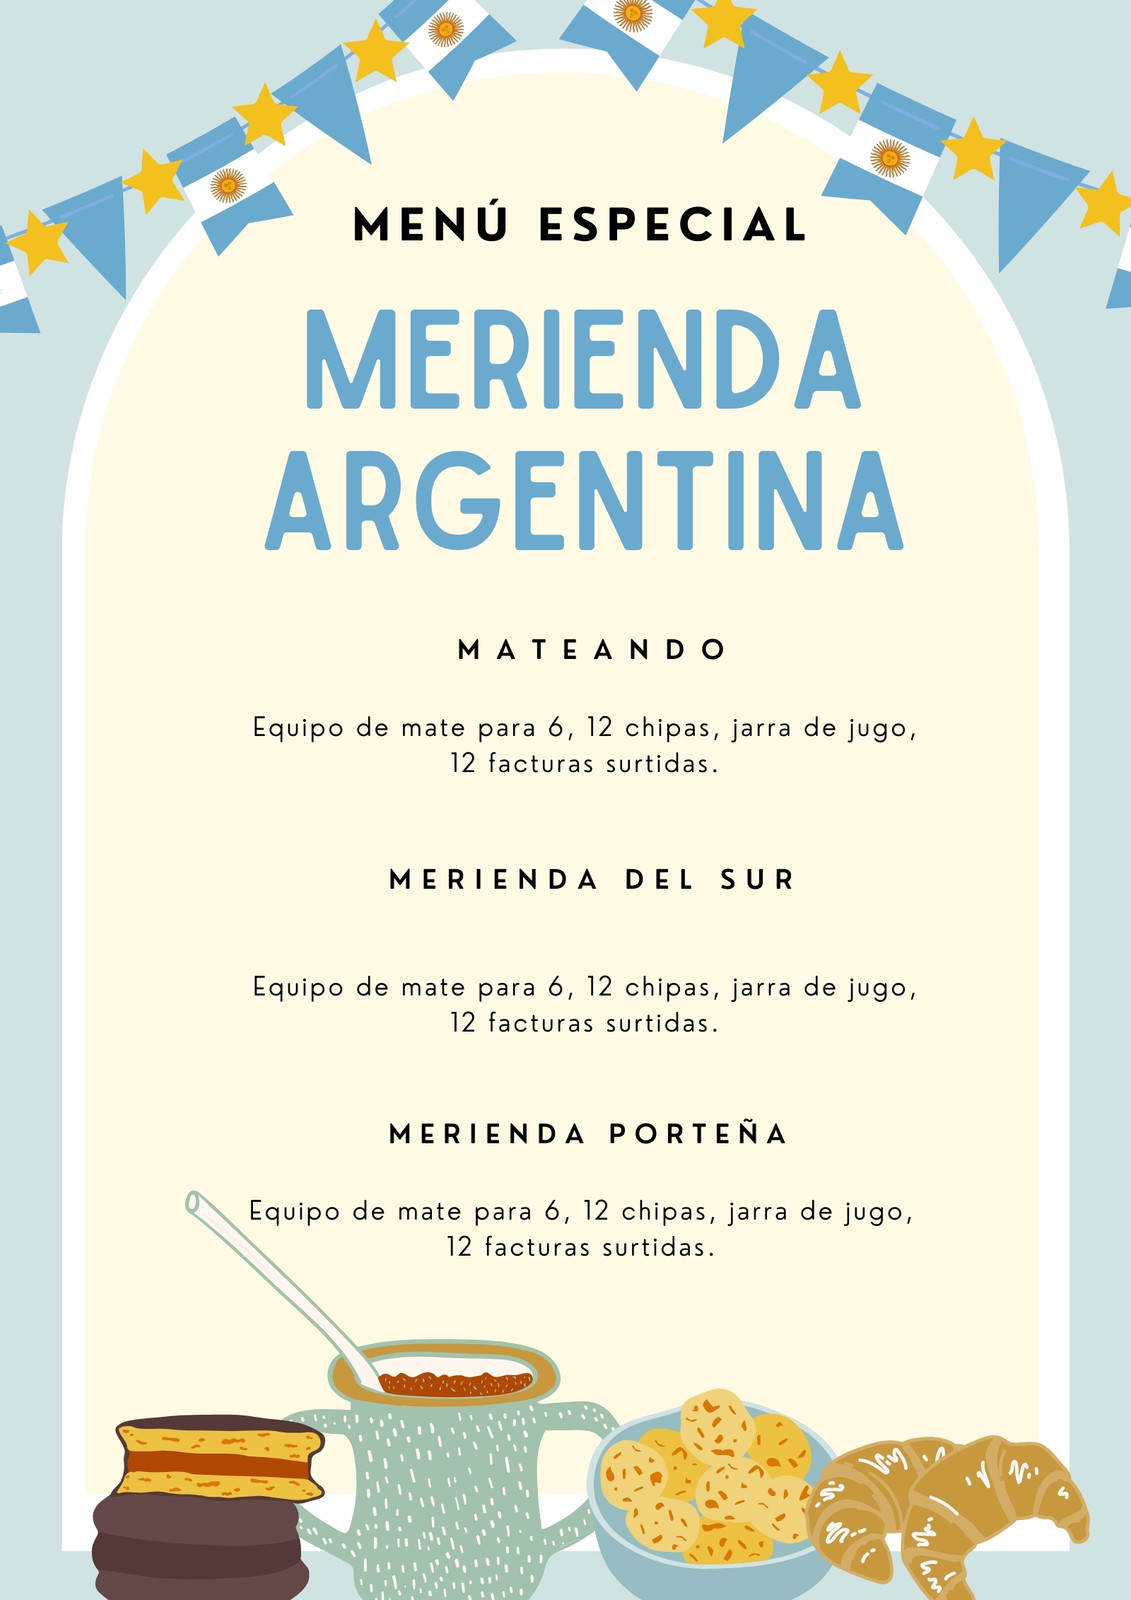 Historia de instagram menú merienda argentina celeste ilustrativa